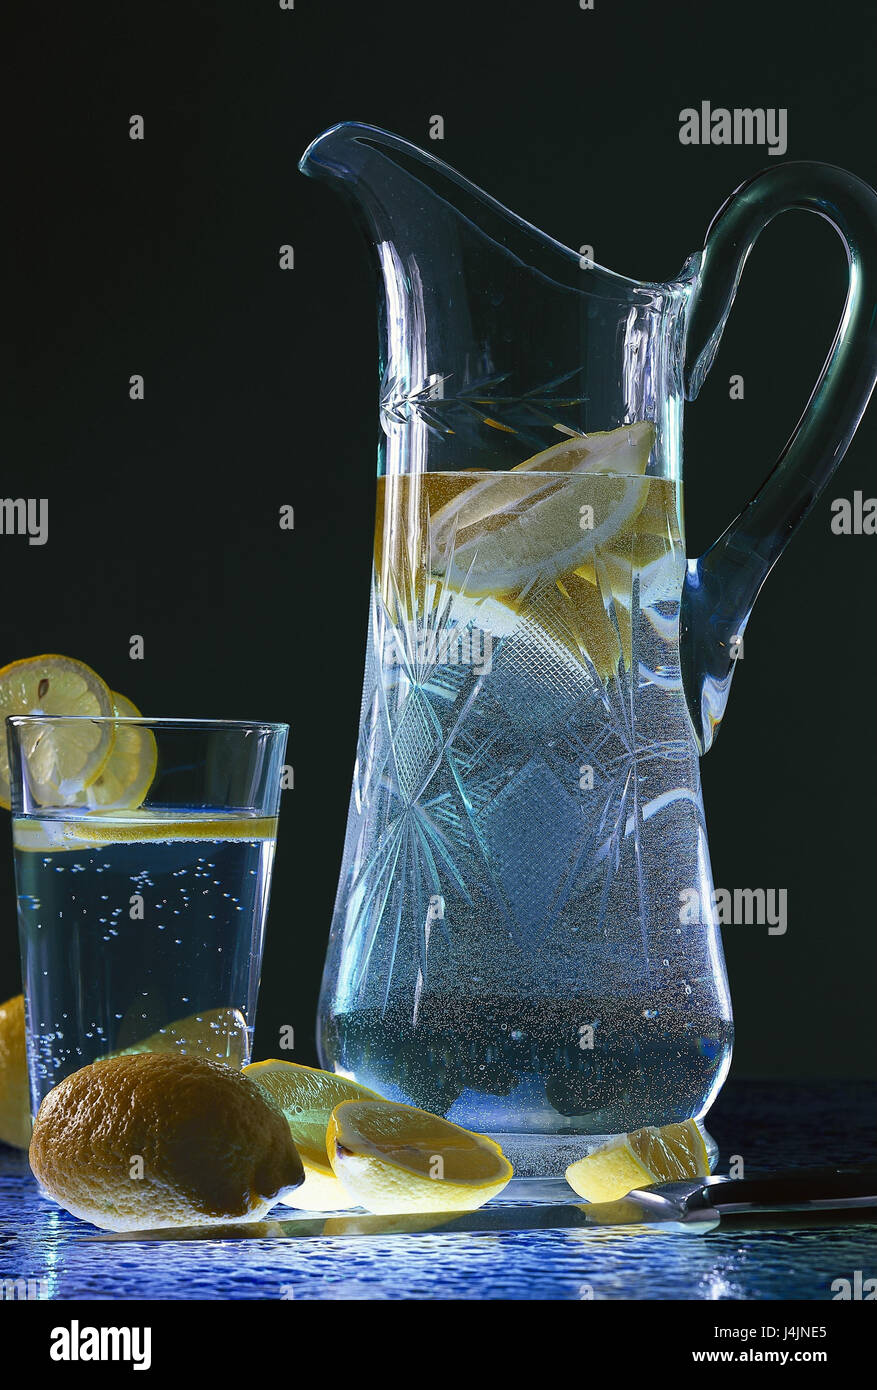 Karaffe, Glas, Wasser, Zitronen Objektfotografie, Wasserglas,  Mineralwasser, Scheiben Zitrone, Getränk, Anti-alkoholische, Erfrischung,  Glaskanne Stockfotografie - Alamy